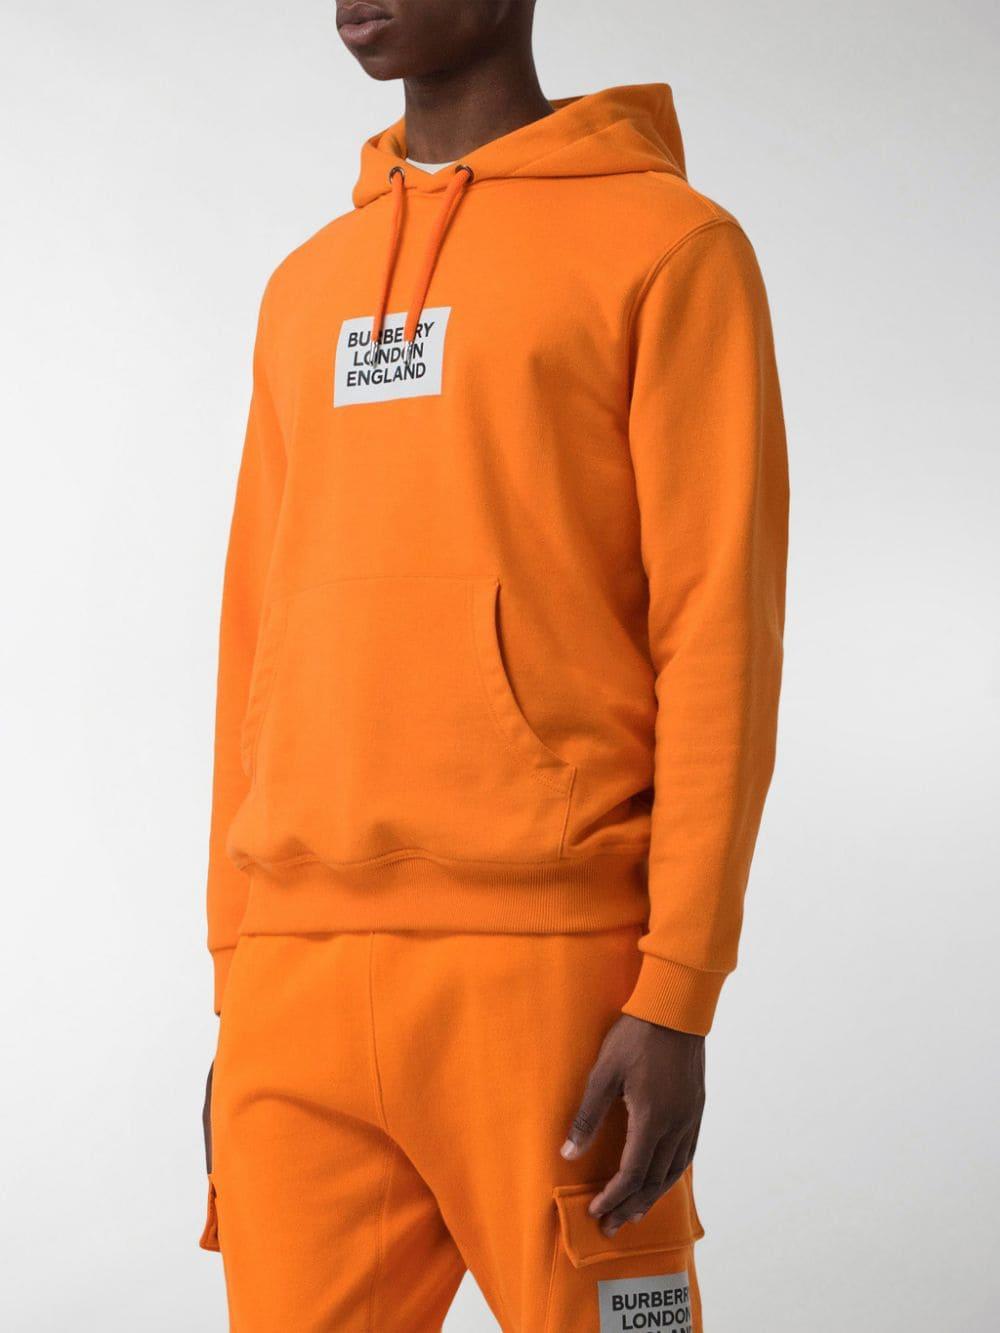 Actualizar 61+ imagen burberry london england hoodie orange